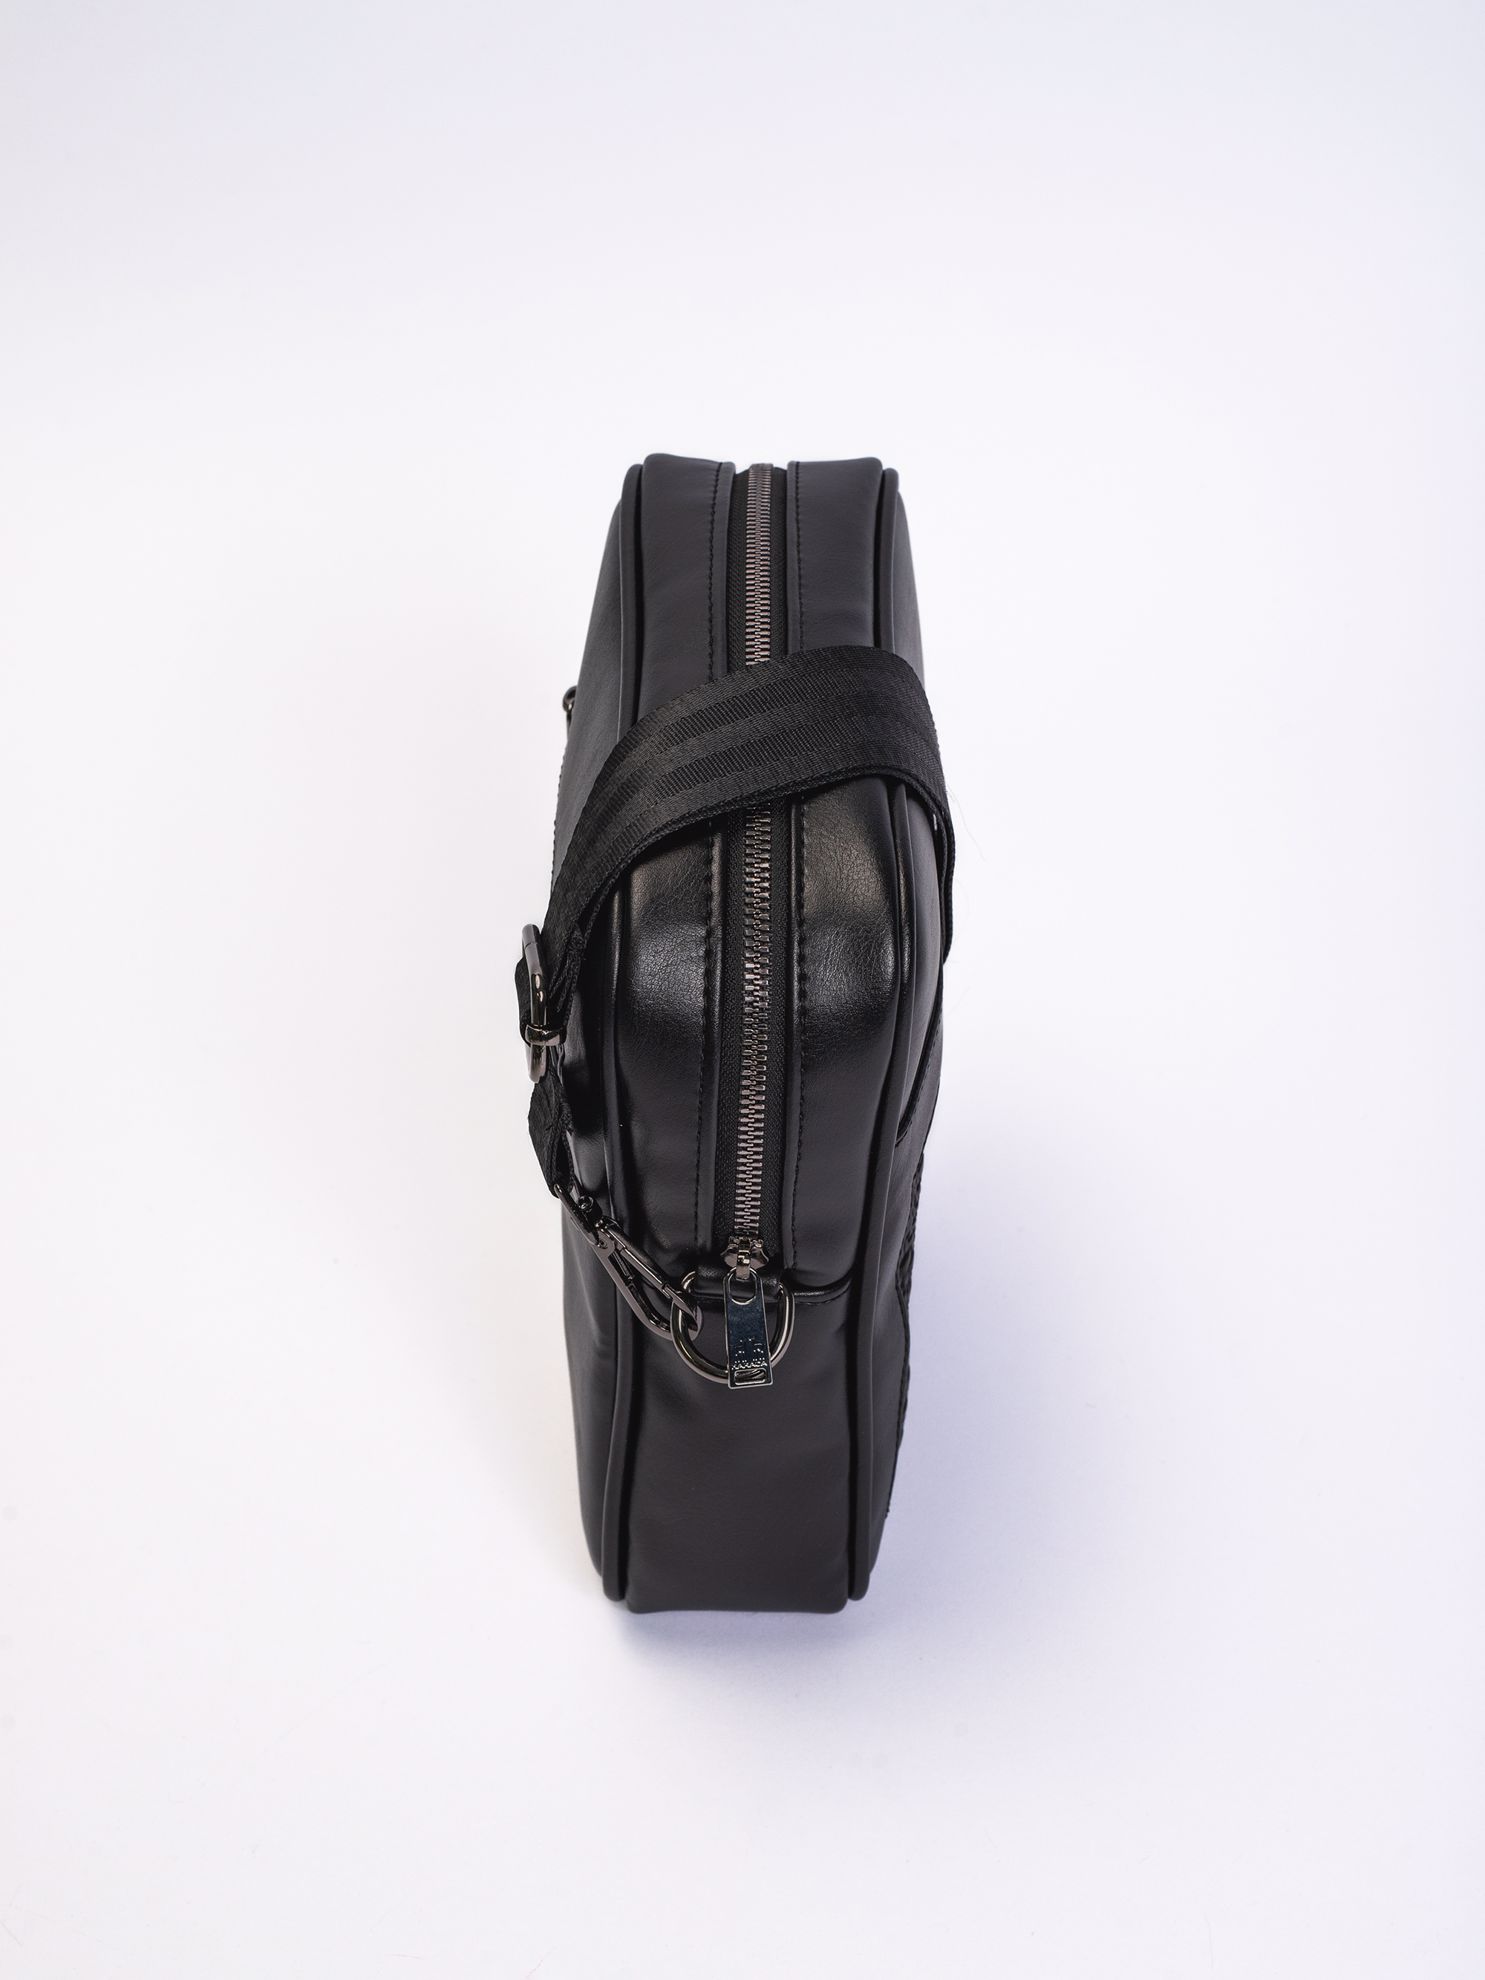 Karaca Erkek Çanta-Siyah. ürün görseli